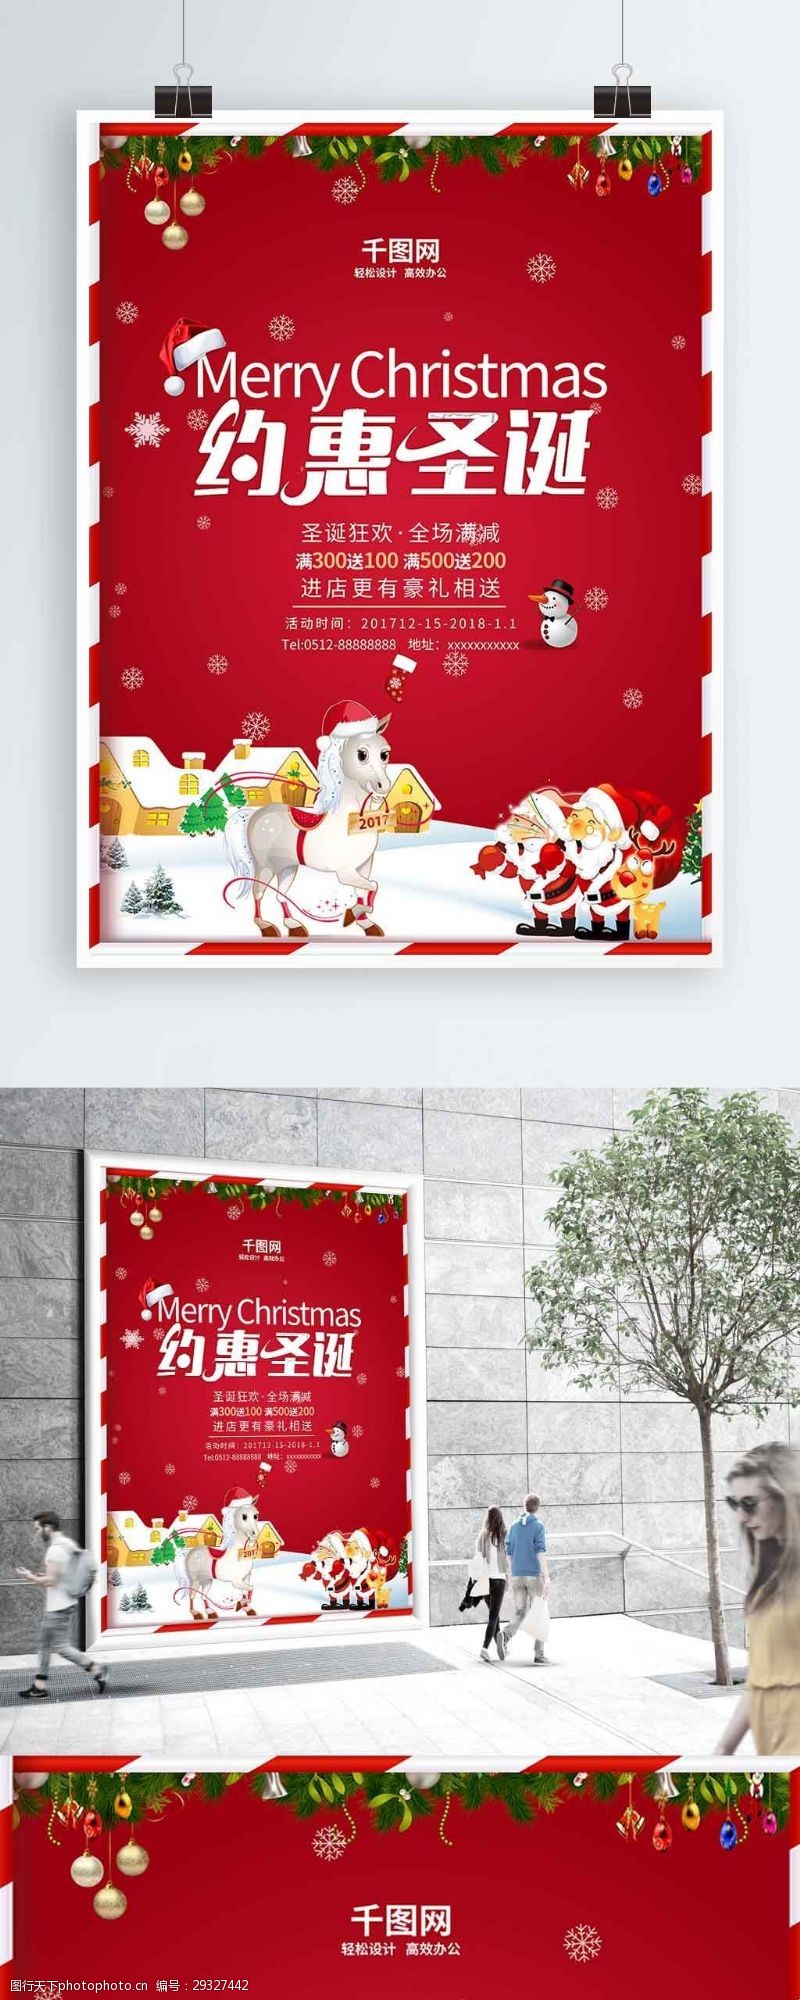 圣诞模板下载红色俏皮约惠圣诞海报